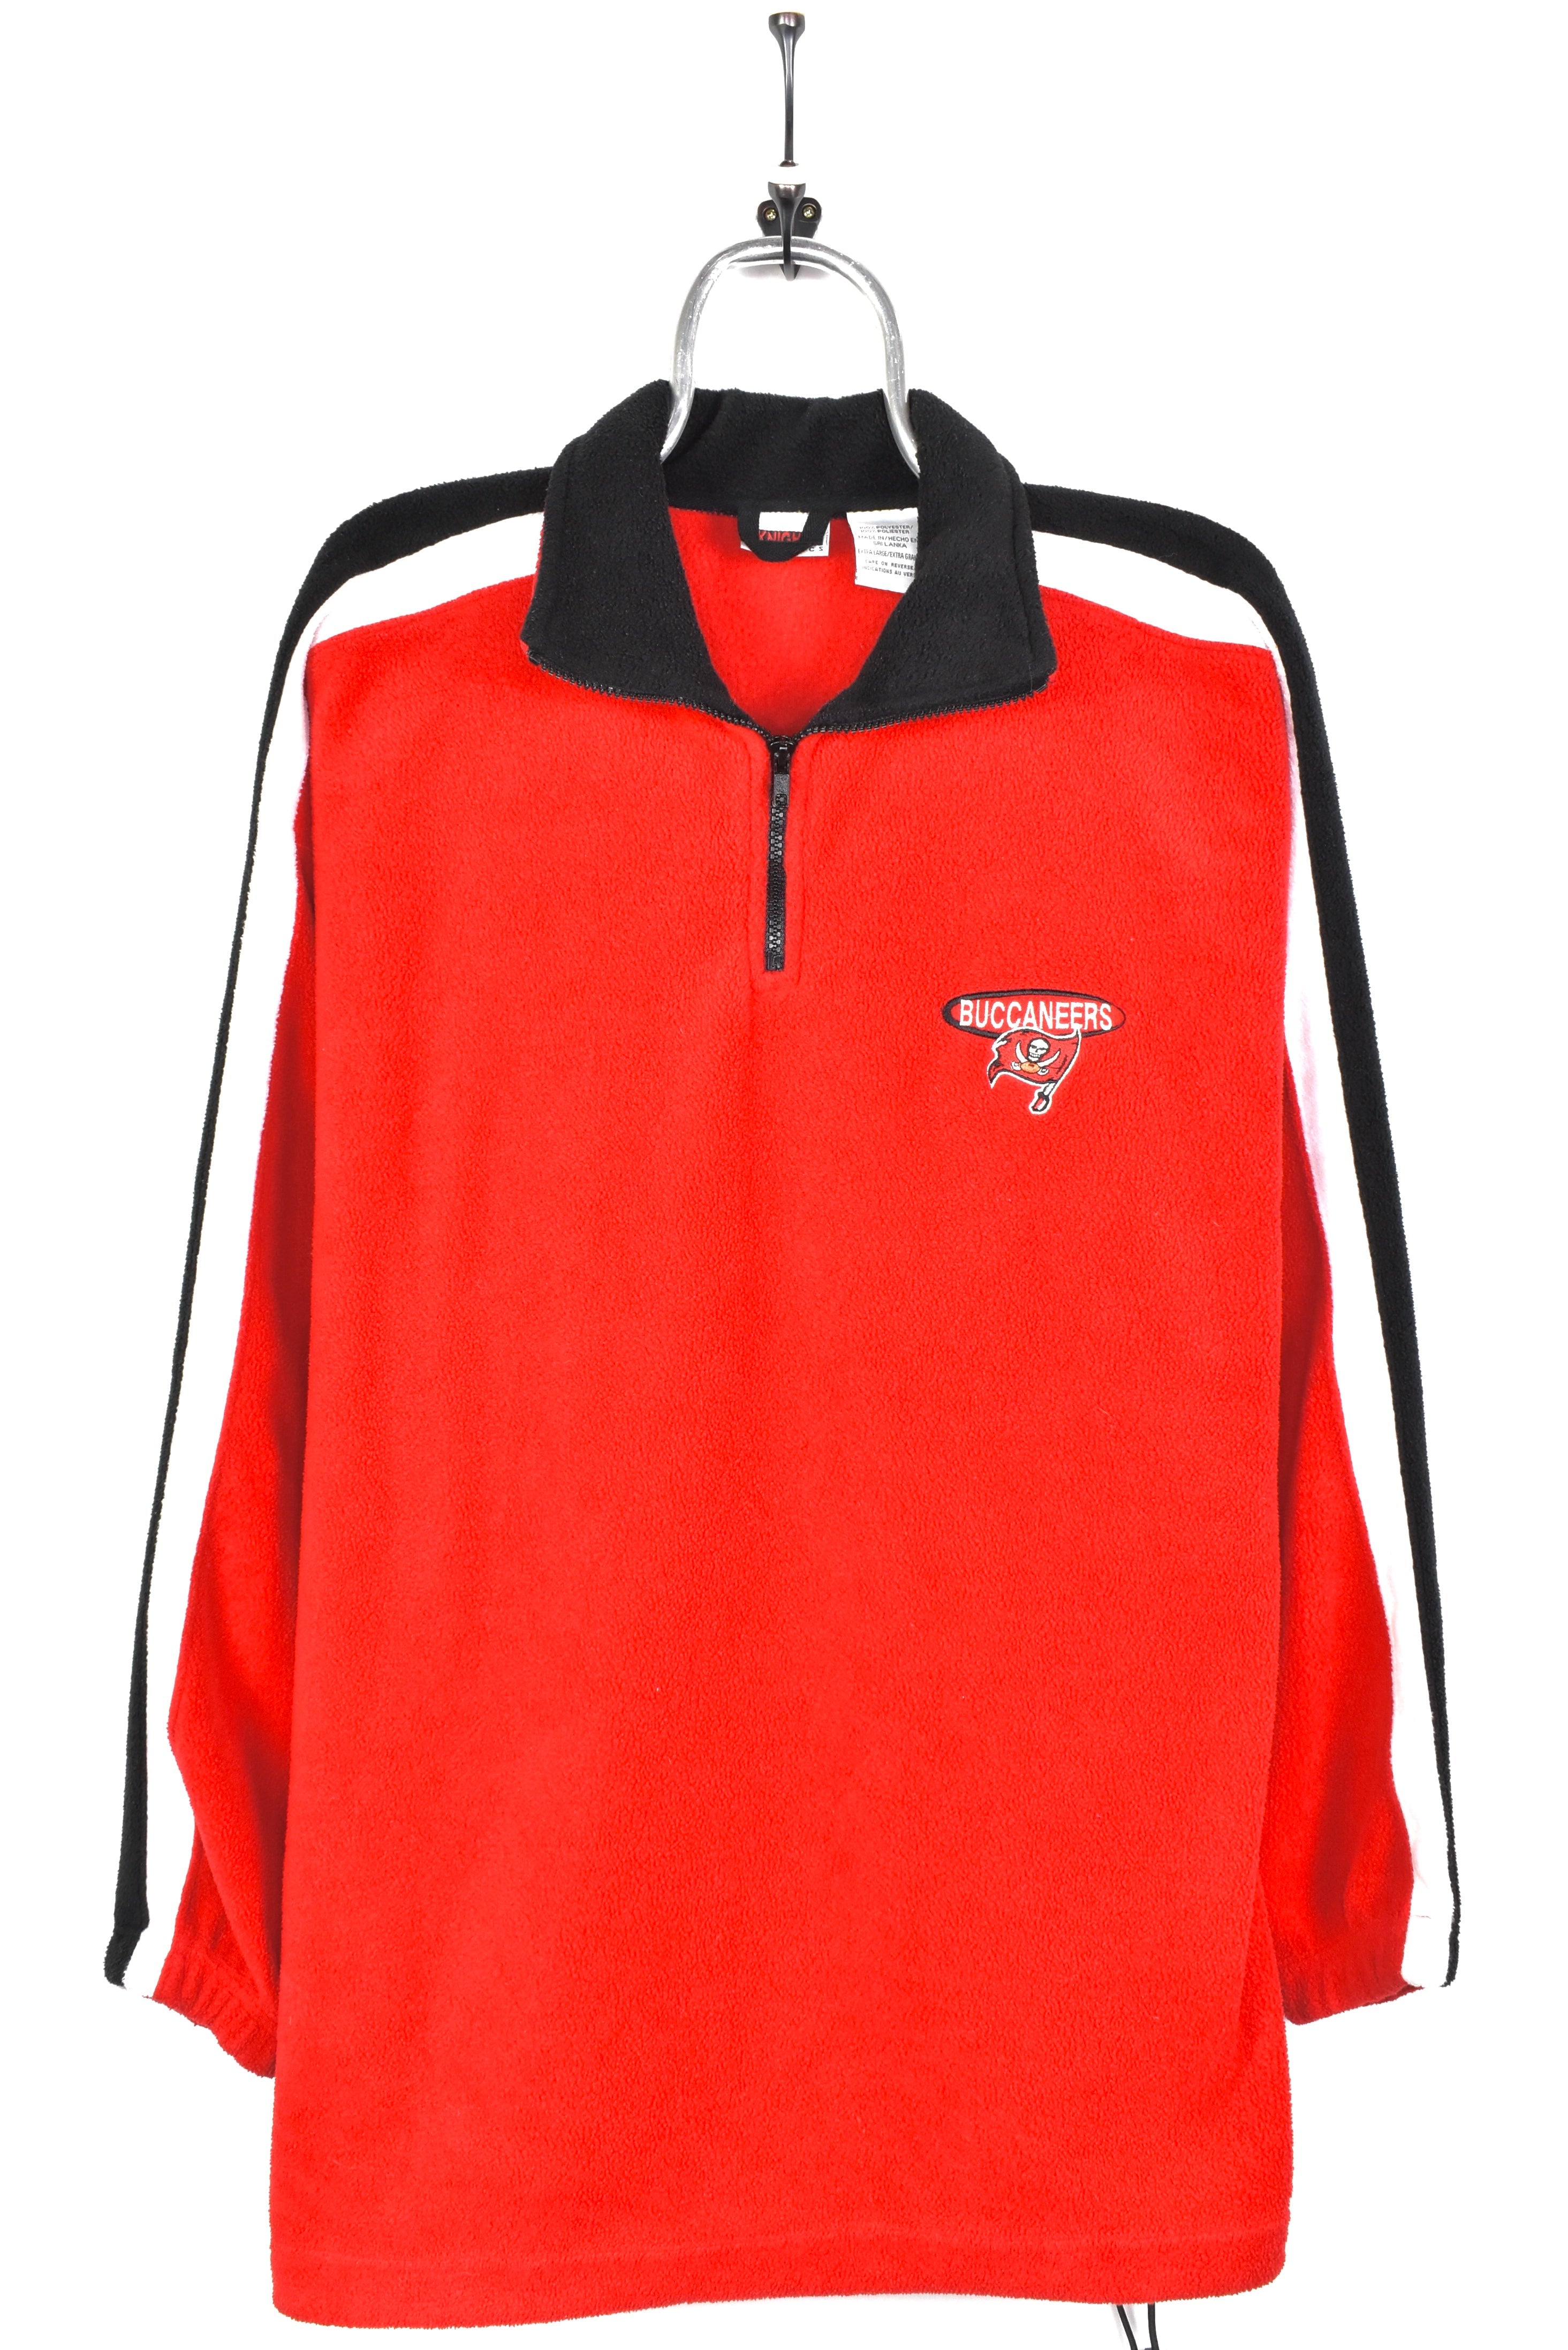 Vintage Tampa Bay Buccaneers fleece, NFL red embroidered 1/4 zip